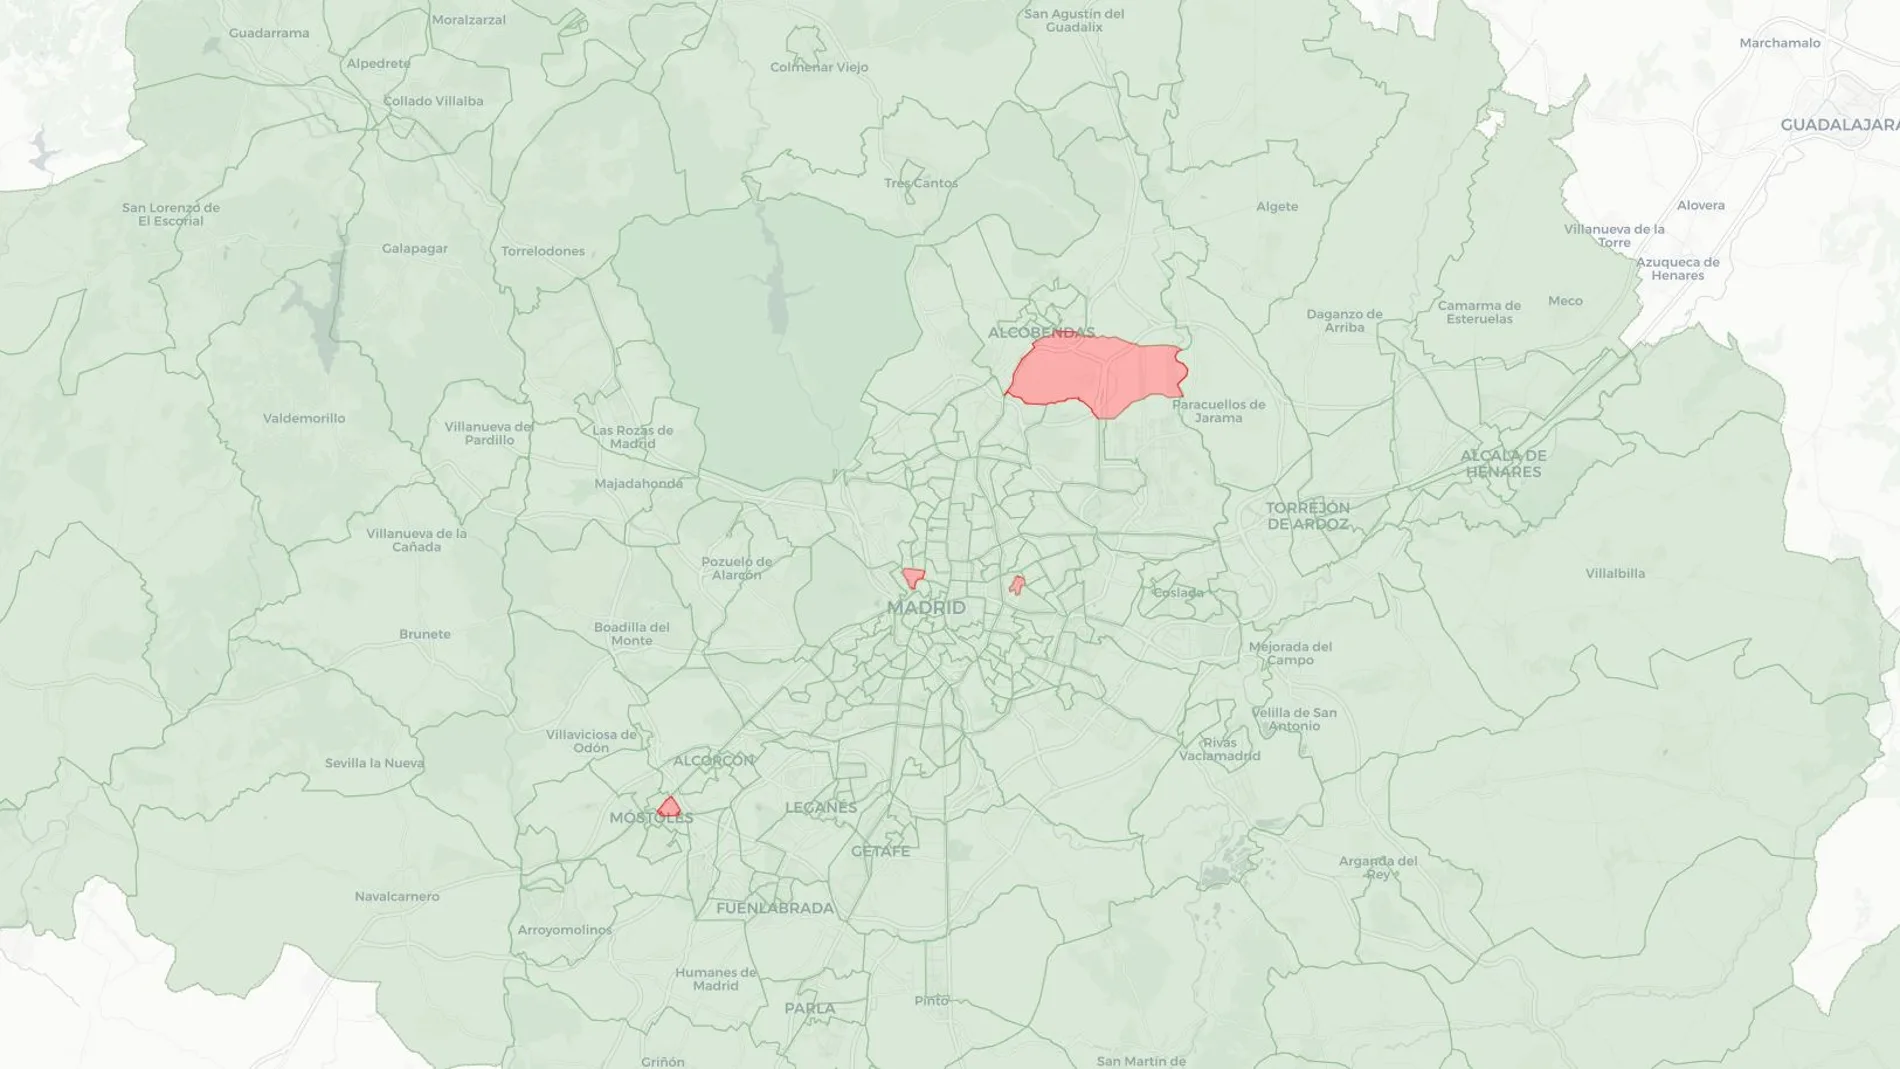 Mapa de las zonas con restricciones específicas dentro de la Comunidad de Madrid